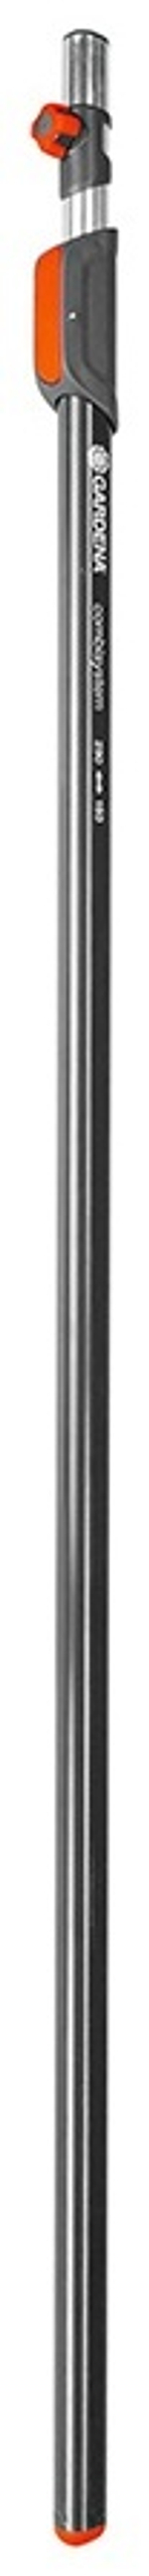 GARDENA телескопическая ручка 03720-20 290 см